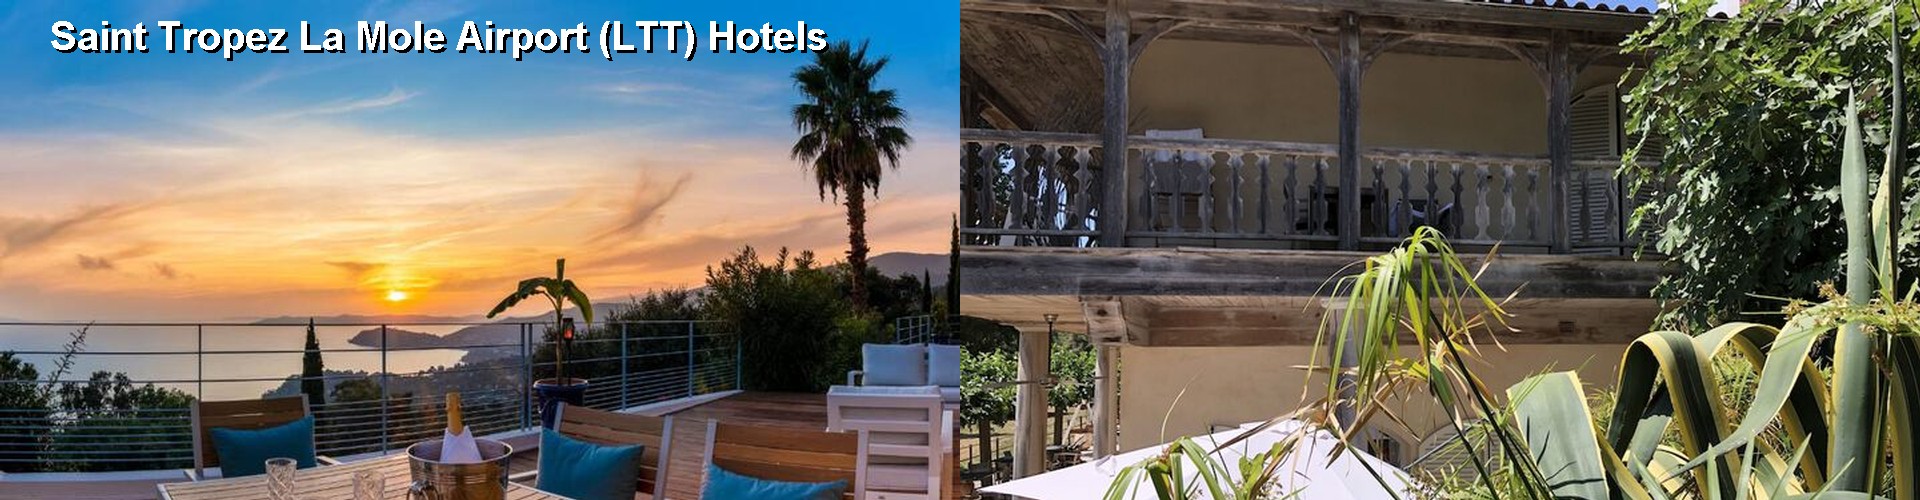 5 Best Hotels near Saint Tropez La Mole Airport (LTT)